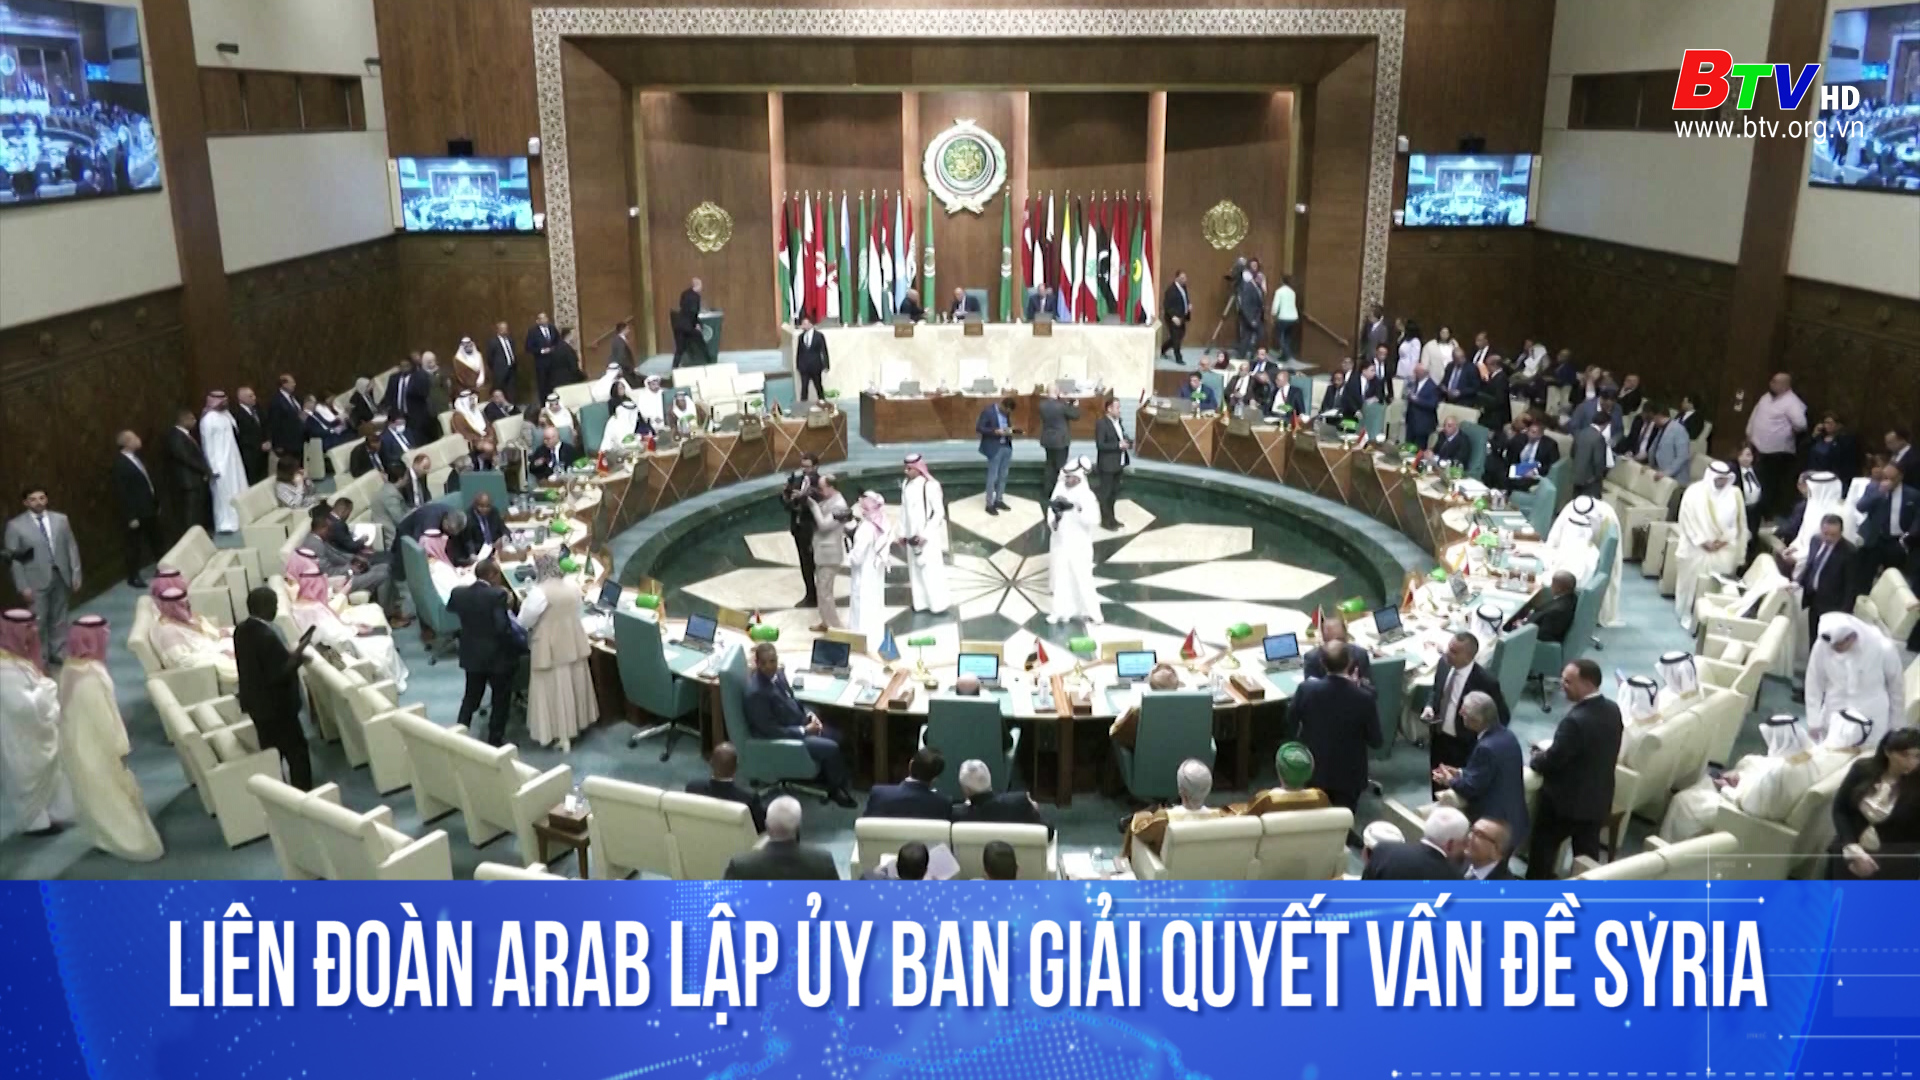 Liên đoàn Arab lập ủy ban giải quyết vấn đề Syria